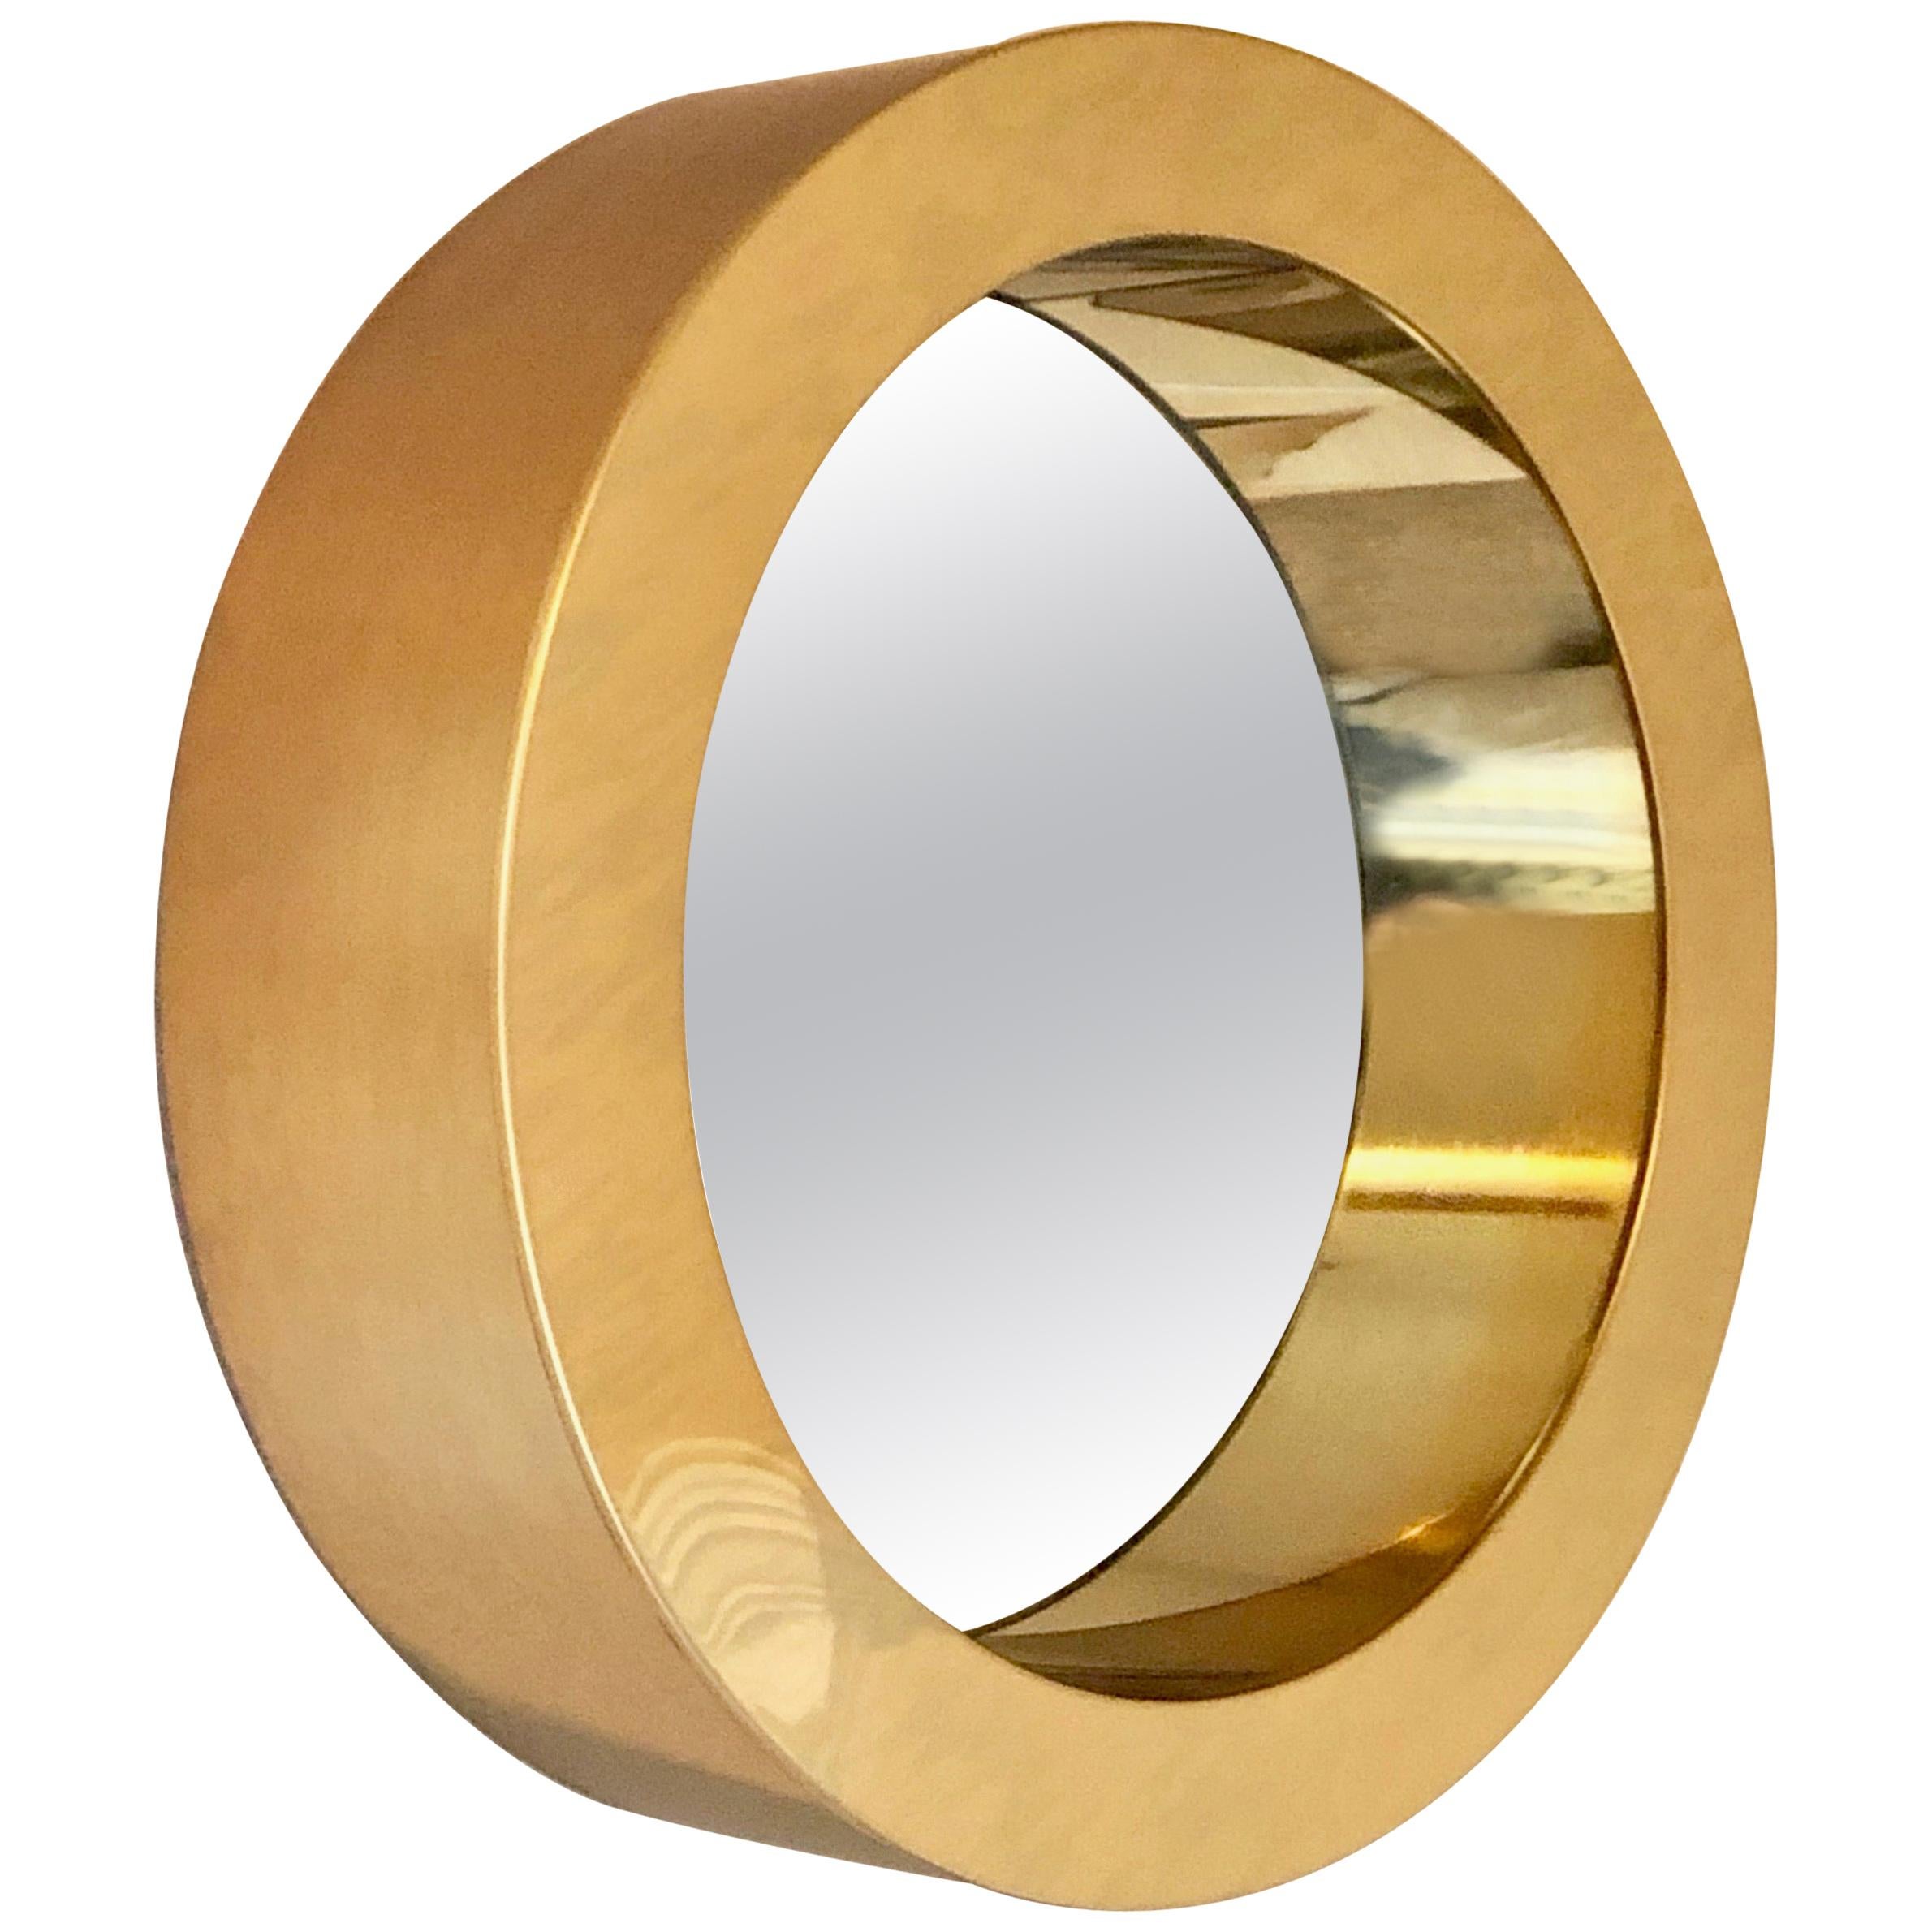 Brass Porthole Mirror Signed C. Jere